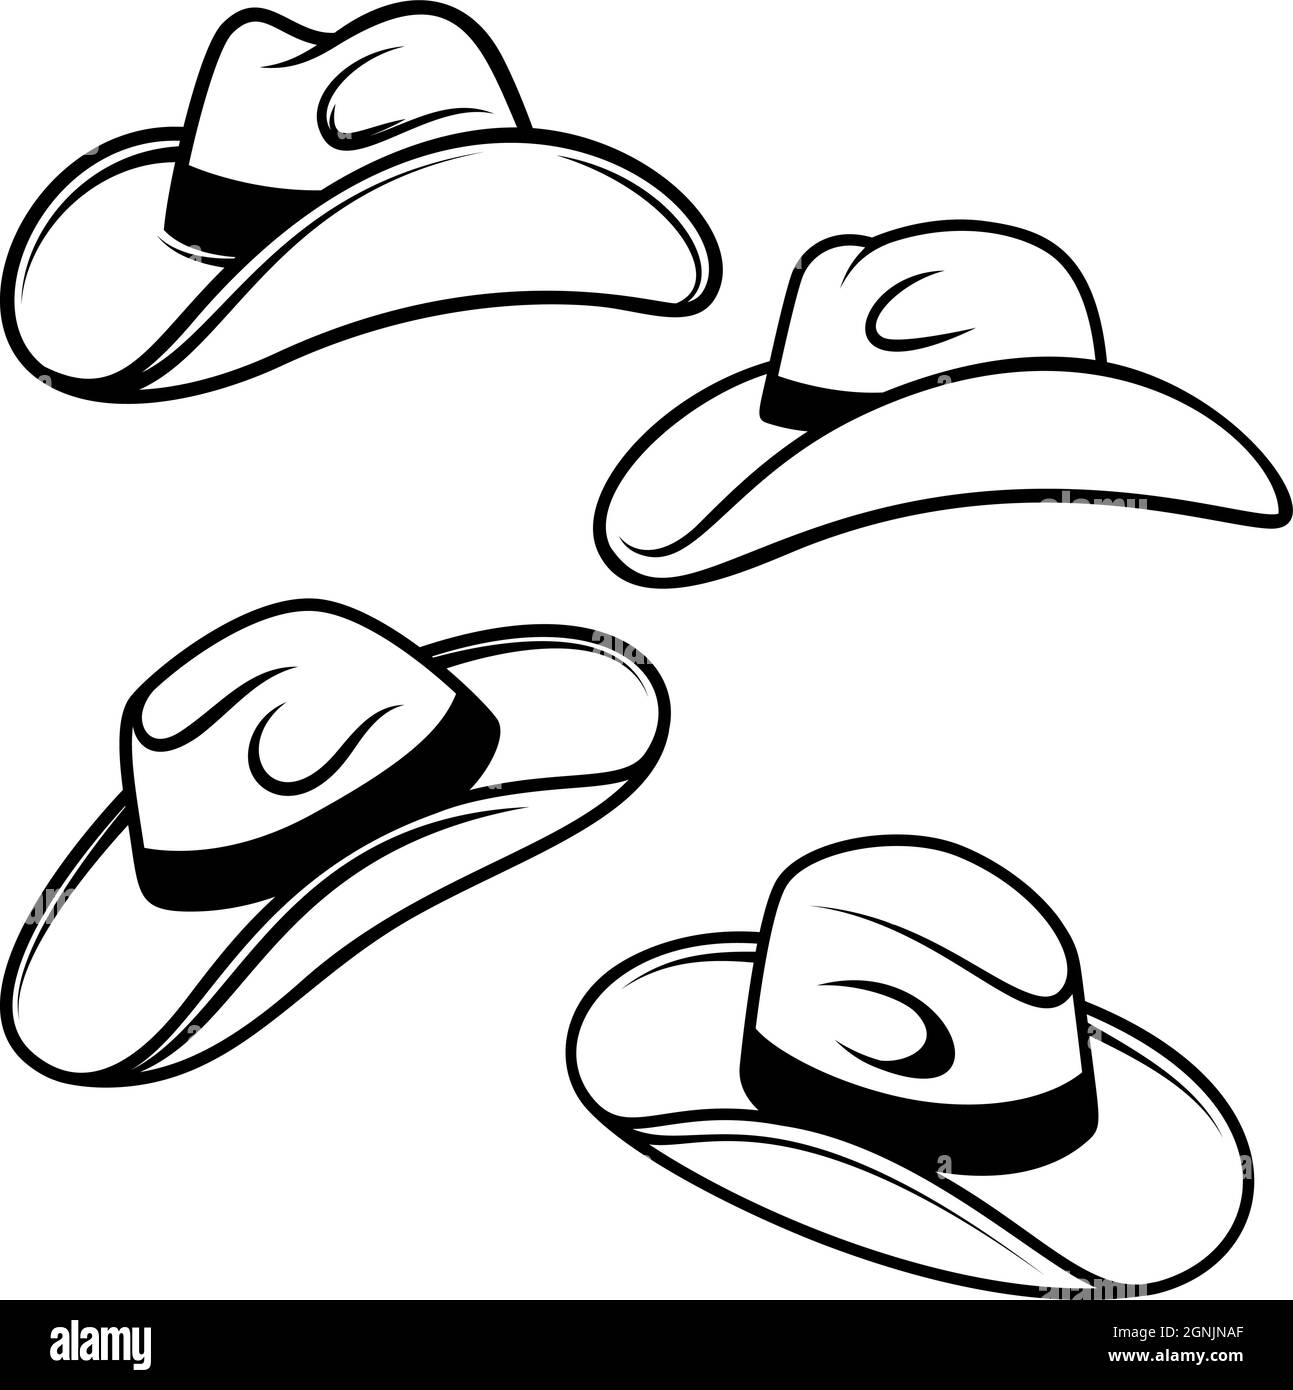 Ensemble d'illustrations de chapeaux de cow-boy. Élément de design pour logo, étiquette, signe, emblème, affiche. Illustration vectorielle Illustration de Vecteur